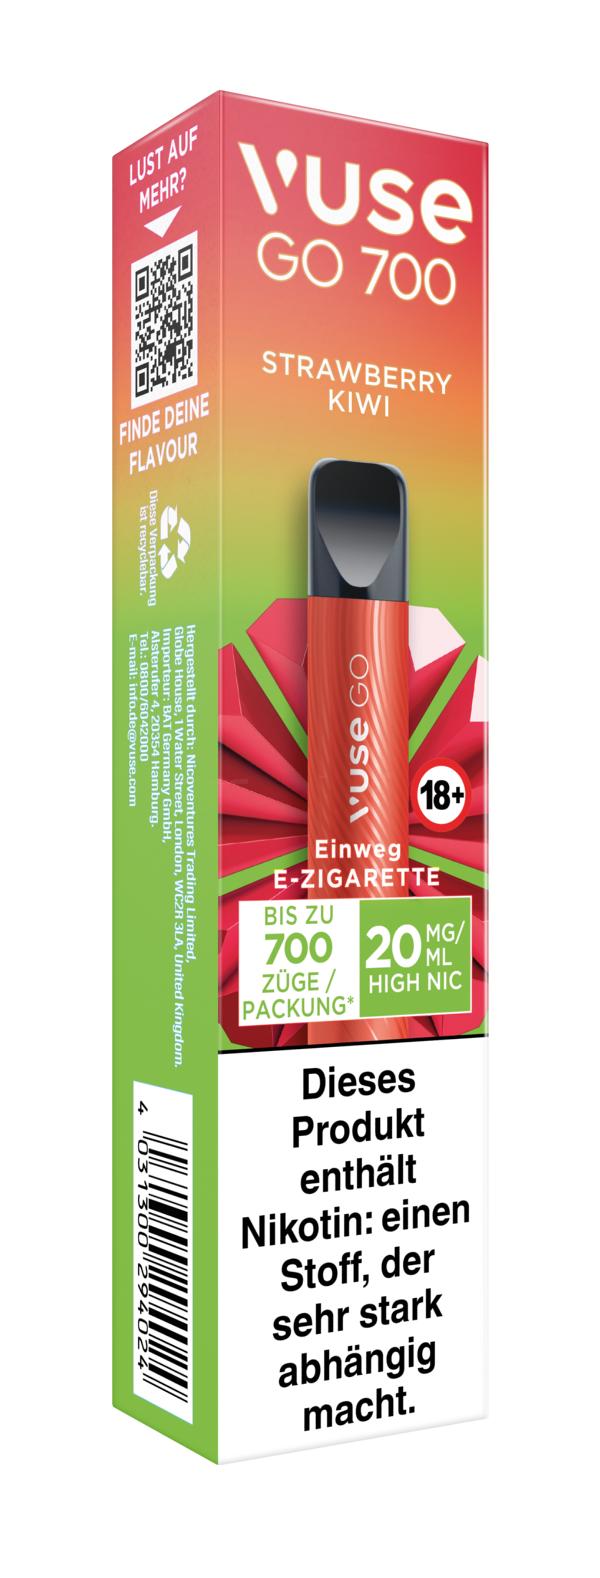 Vuse Go 700 Einweg E-Zigarette Strawberry Kiwi 20mg/ml Nikotin